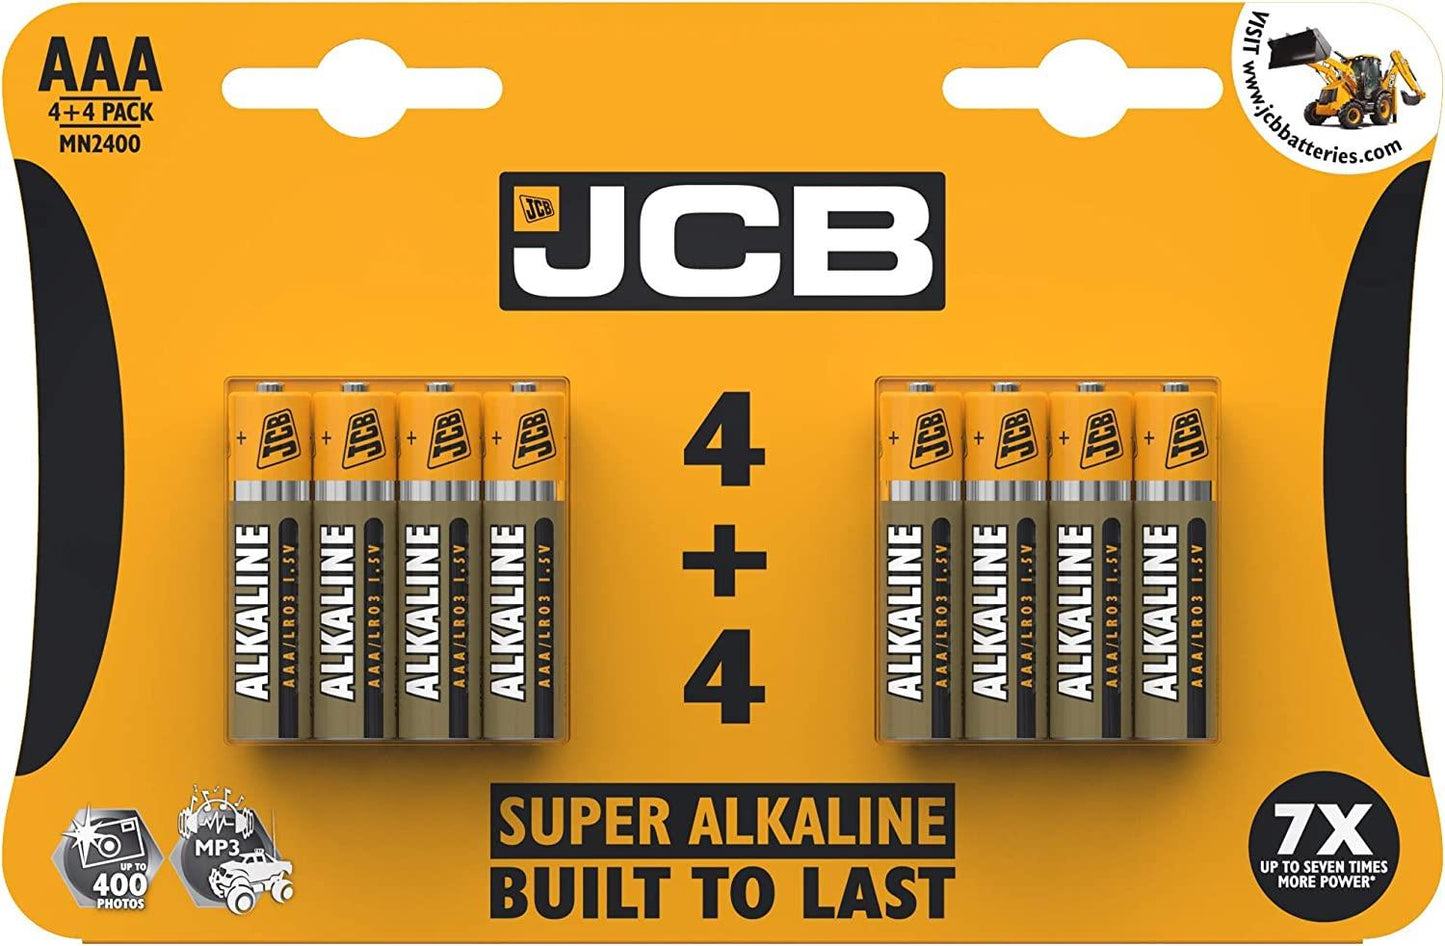 JCB AAA Super Alkaline Batteries 8 Per Card